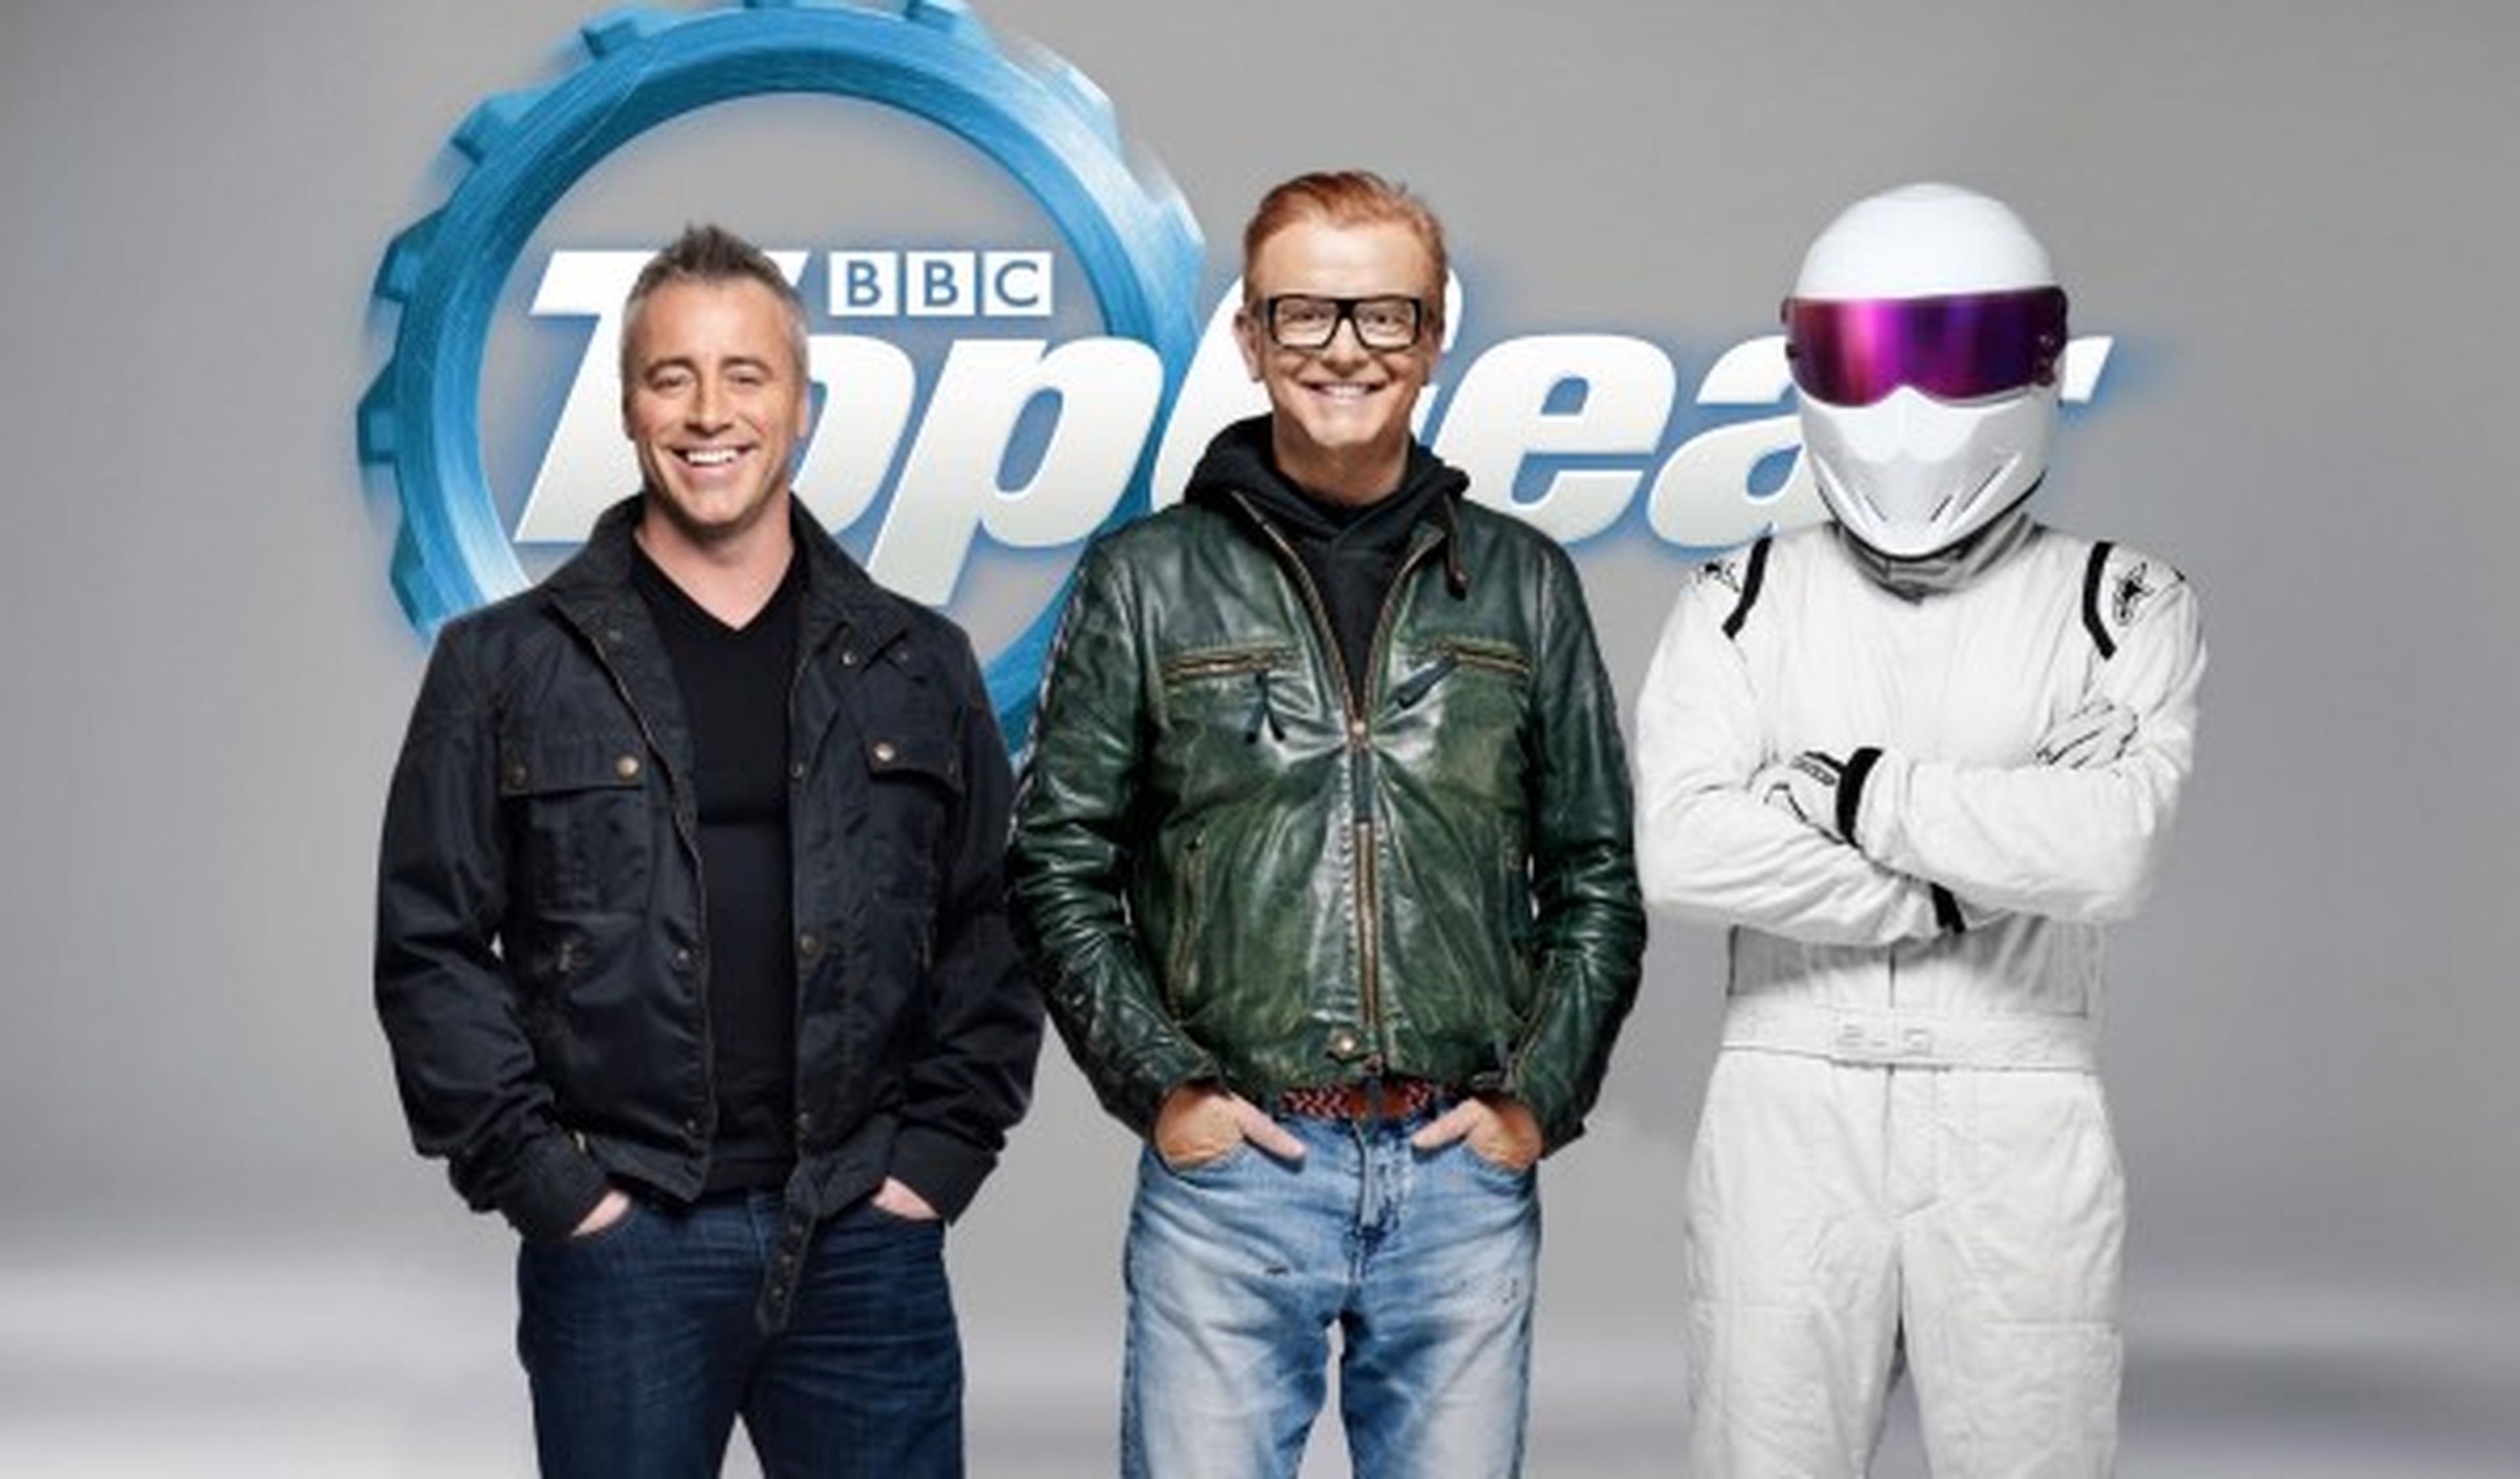 El programa de televisión 'Top Gear' se retrasa